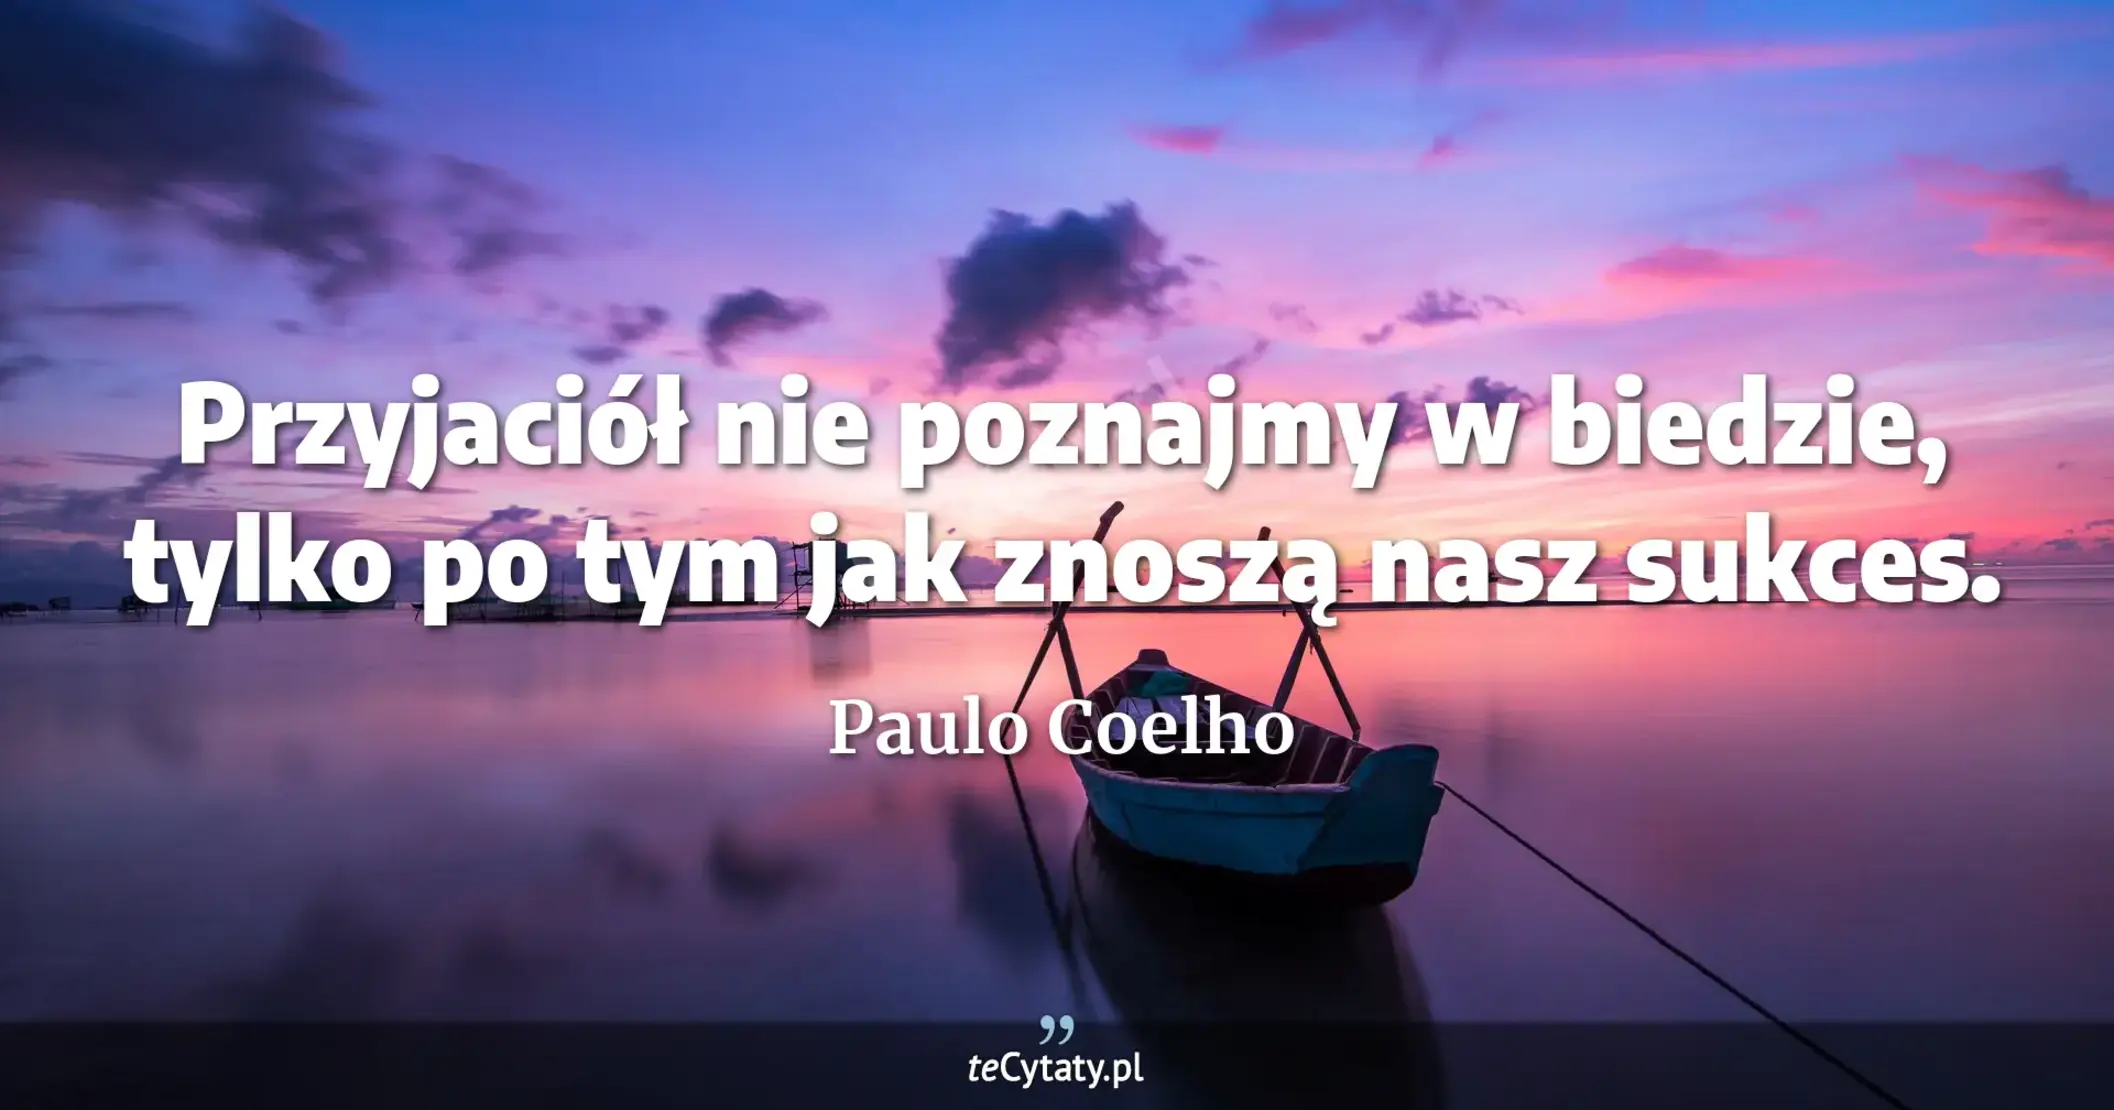 Przyjaciół nie poznajmy w biedzie, tylko po tym jak znoszą nasz sukces. - Paulo Coelho